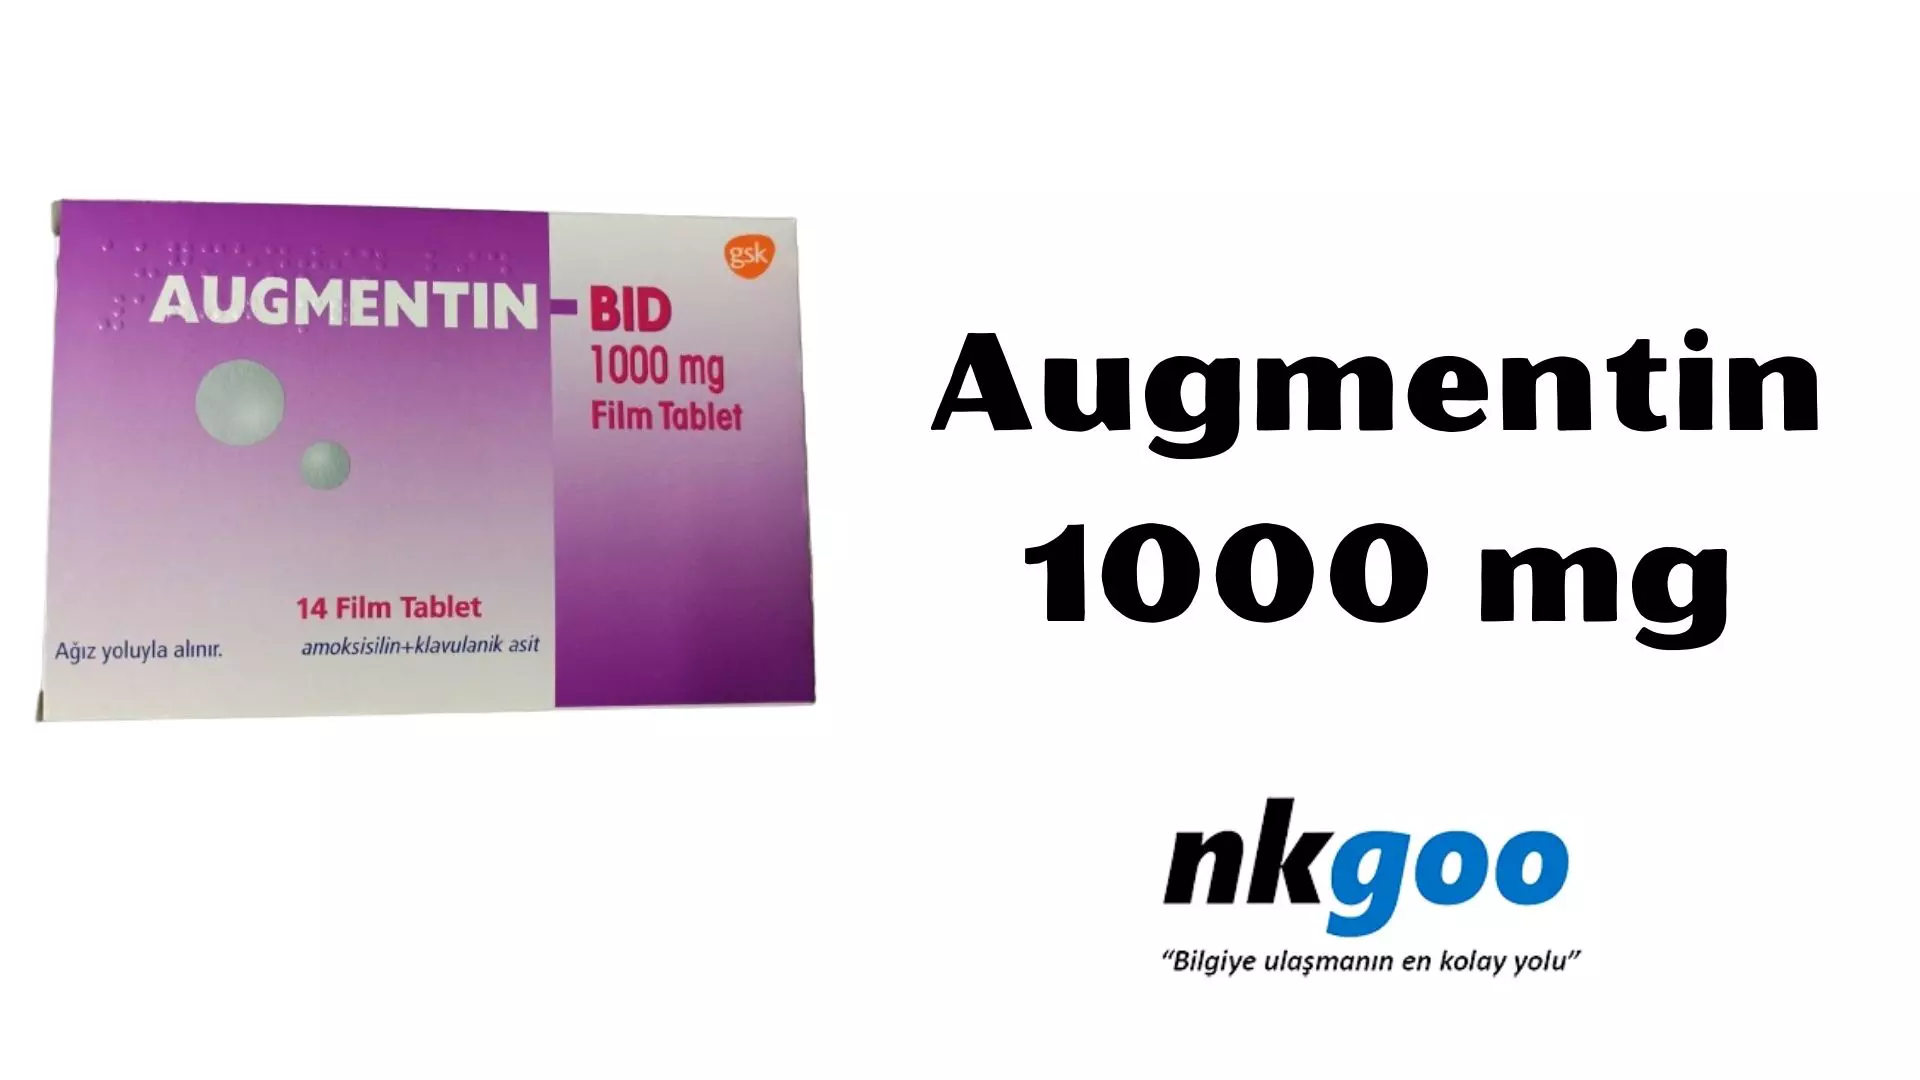 Augmentin bıd 1000 mg